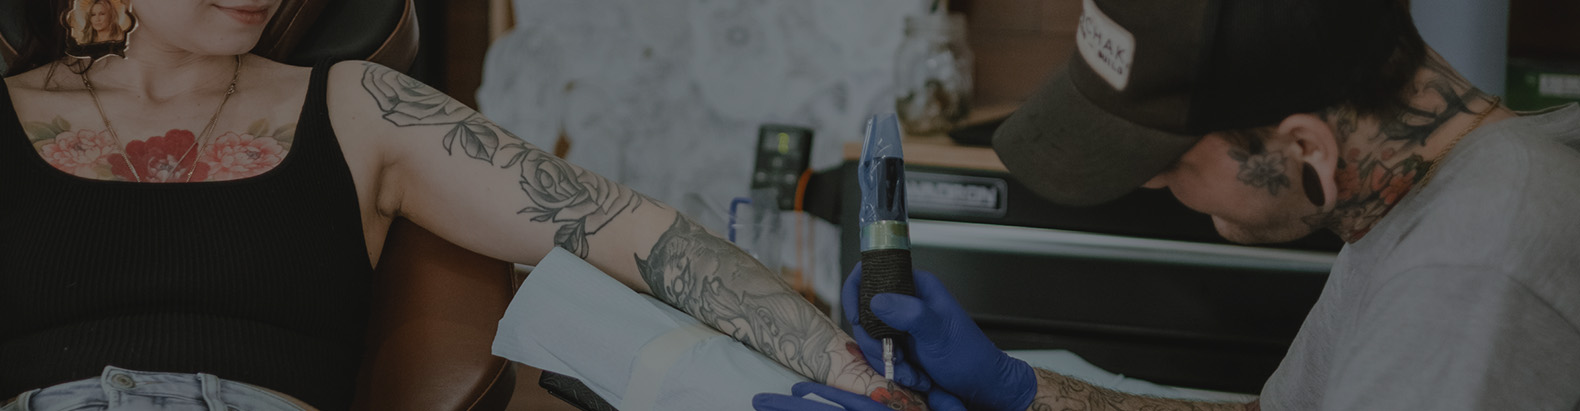 woman getting tattood